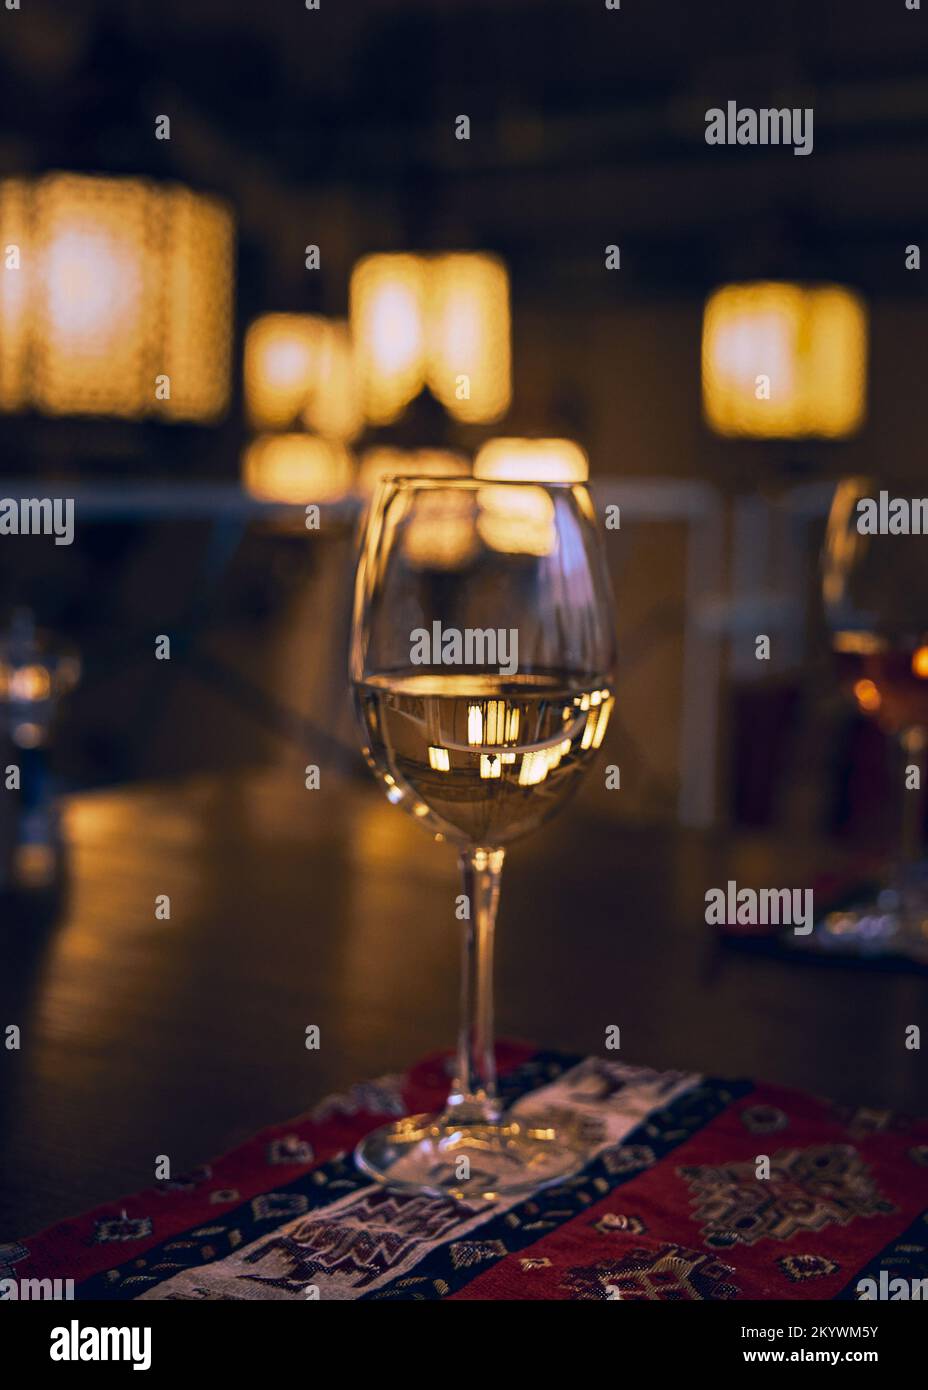 Reflet des rayons lumineux du restaurant et de l’espace environnant dans un verre de vin blanc sur une table de restaurant Banque D'Images